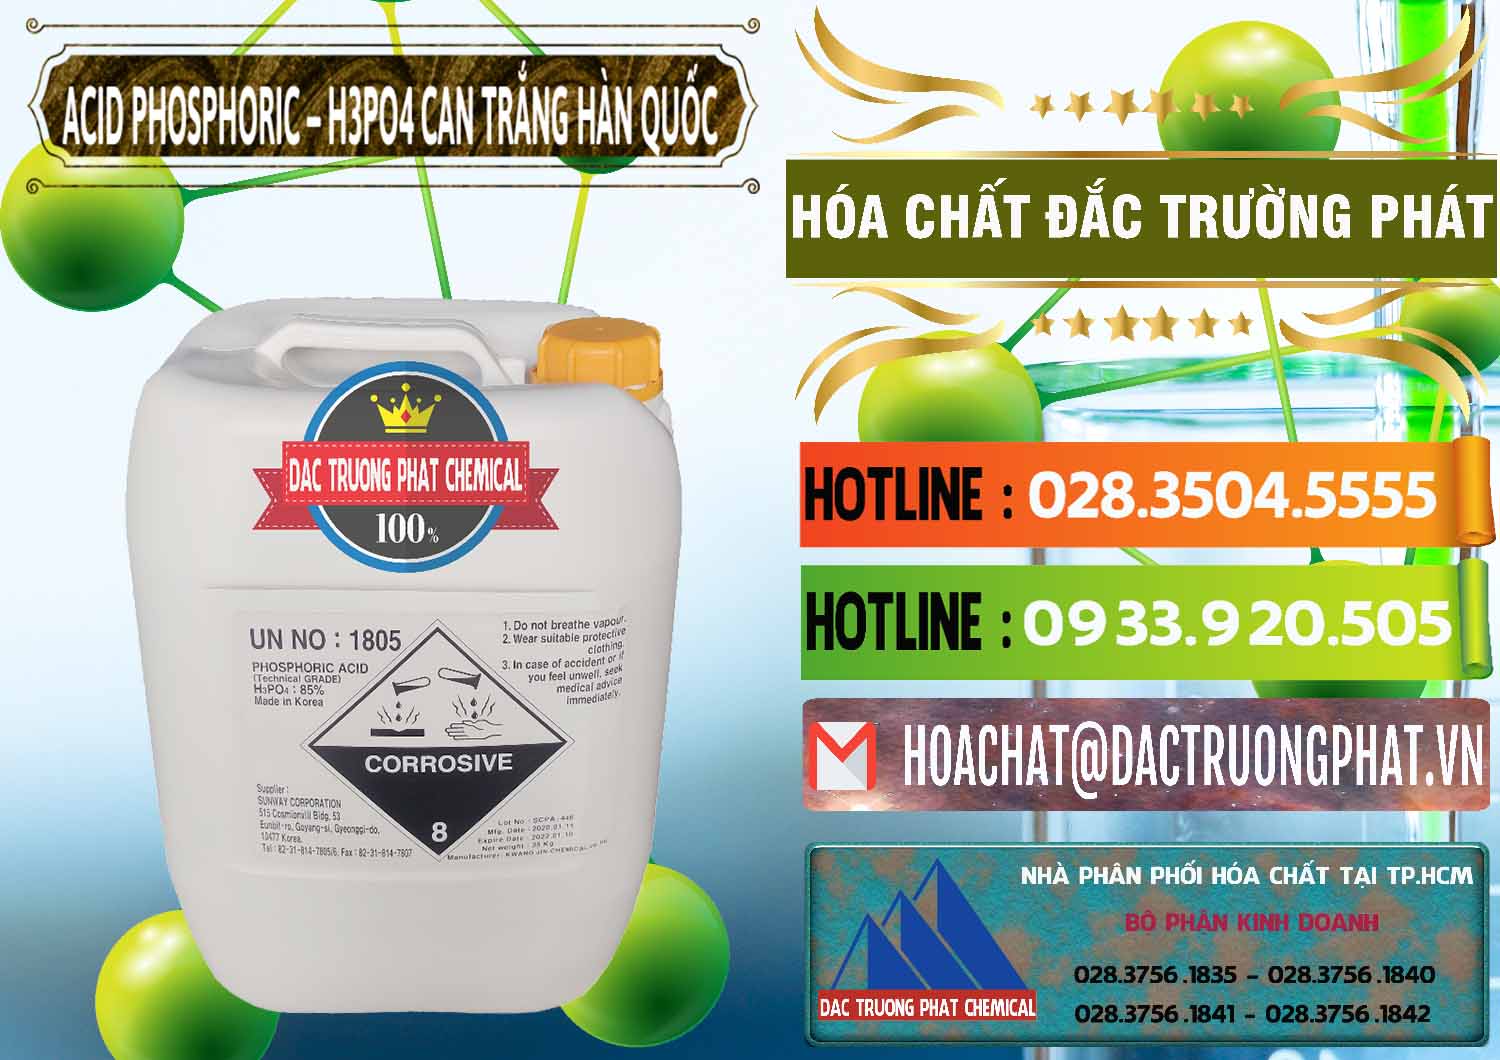 Công ty cung cấp & bán Acid Phosphoric - Axit Phosphoric H3PO4 Can Trắng Hàn Quốc Korea - 0017 - Công ty chuyên bán & phân phối hóa chất tại TP.HCM - cungcaphoachat.com.vn